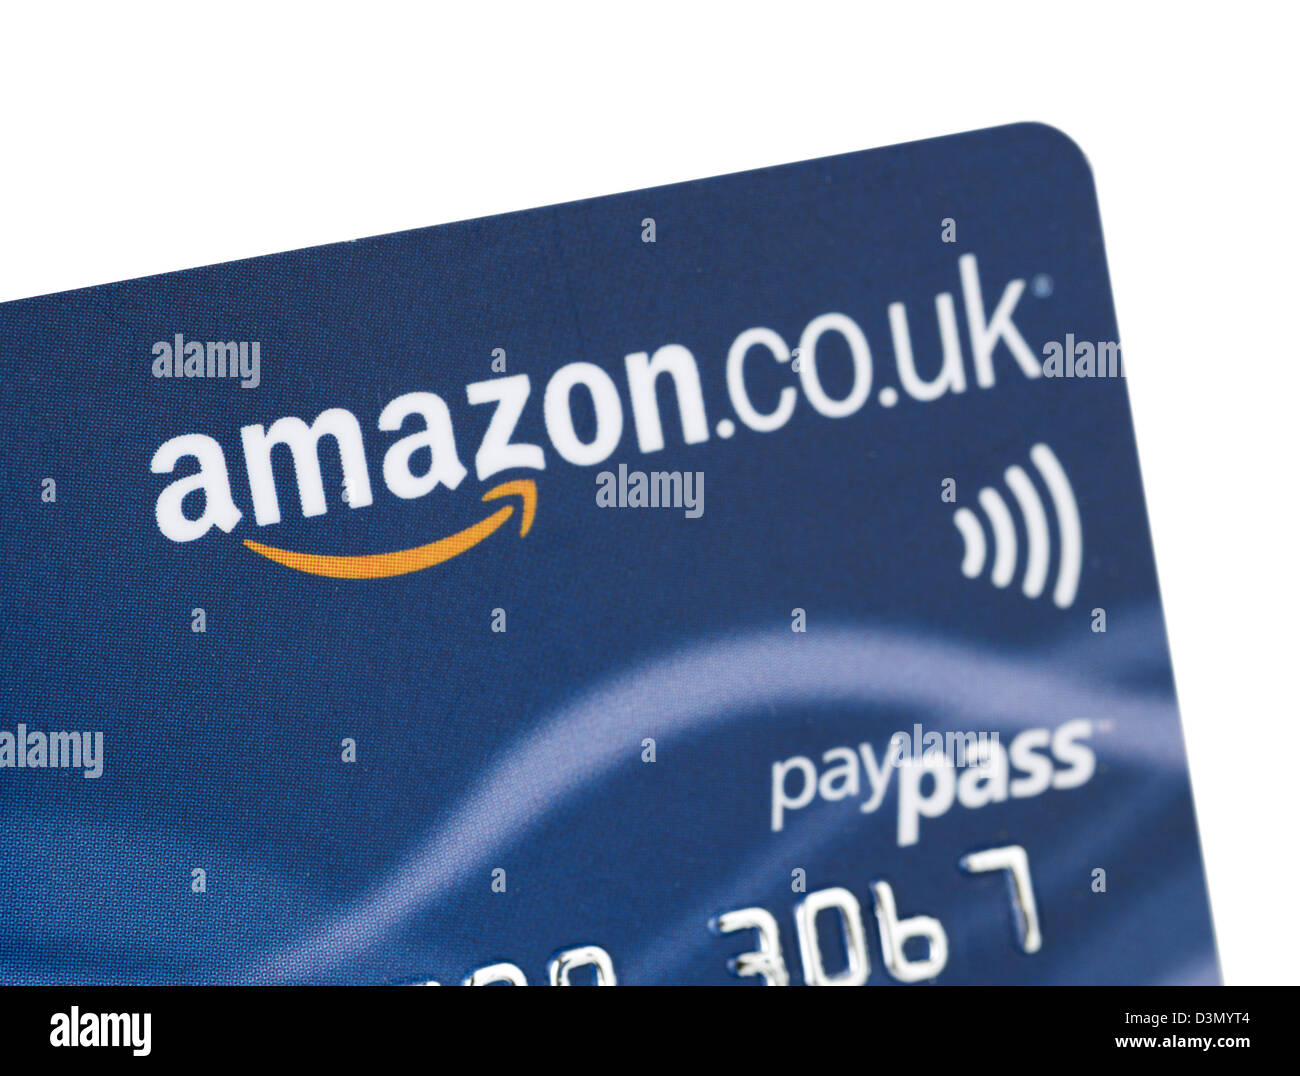 Amazon.Co.UK branded Kreditkarte in Großbritannien ausgestellt Stockfoto